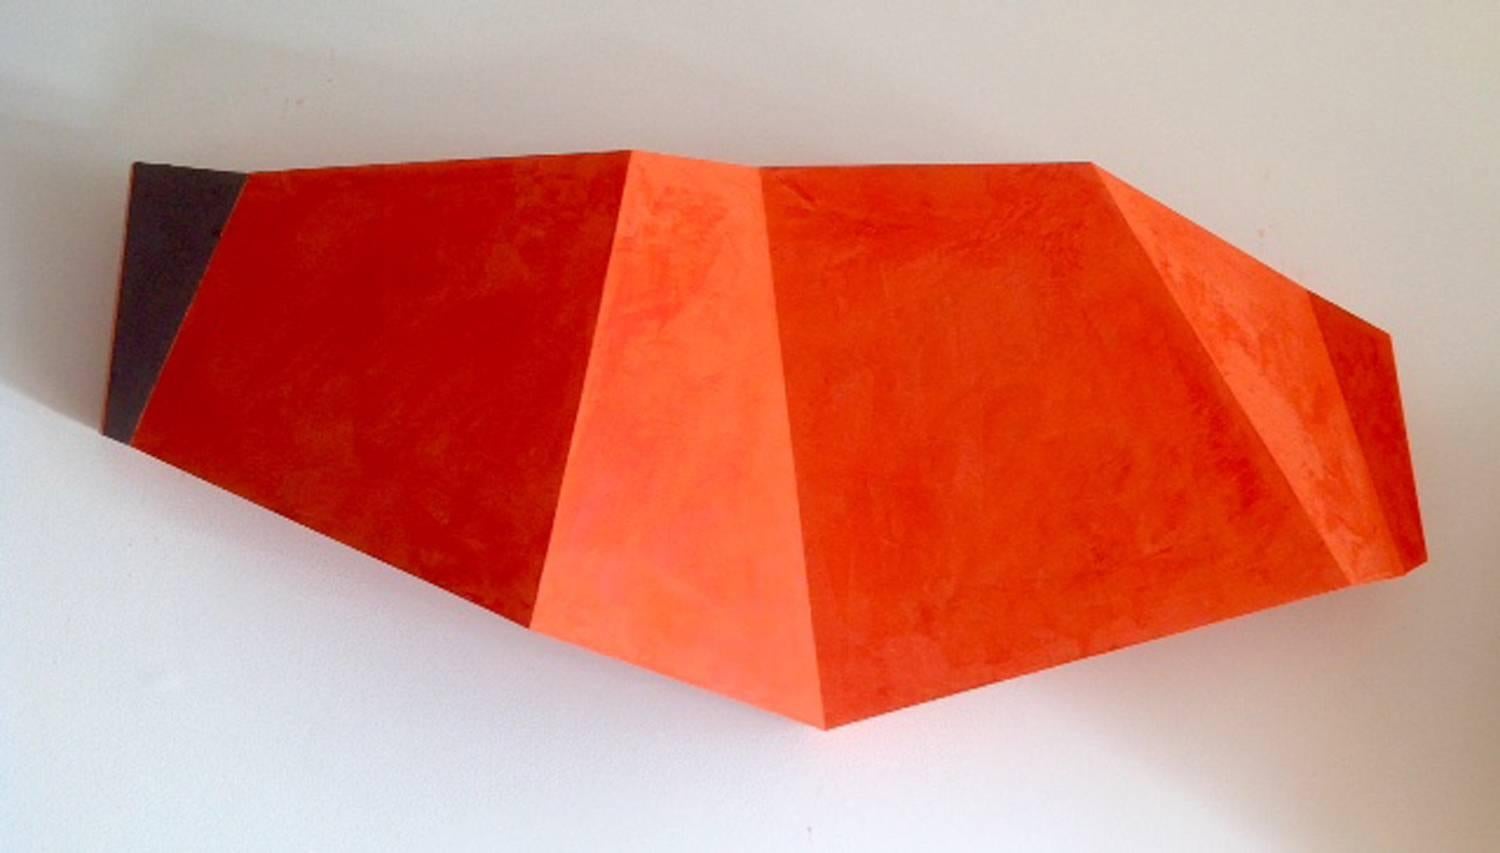 Sunsets (Minimalist Abstract Orange Wall Sculpture)